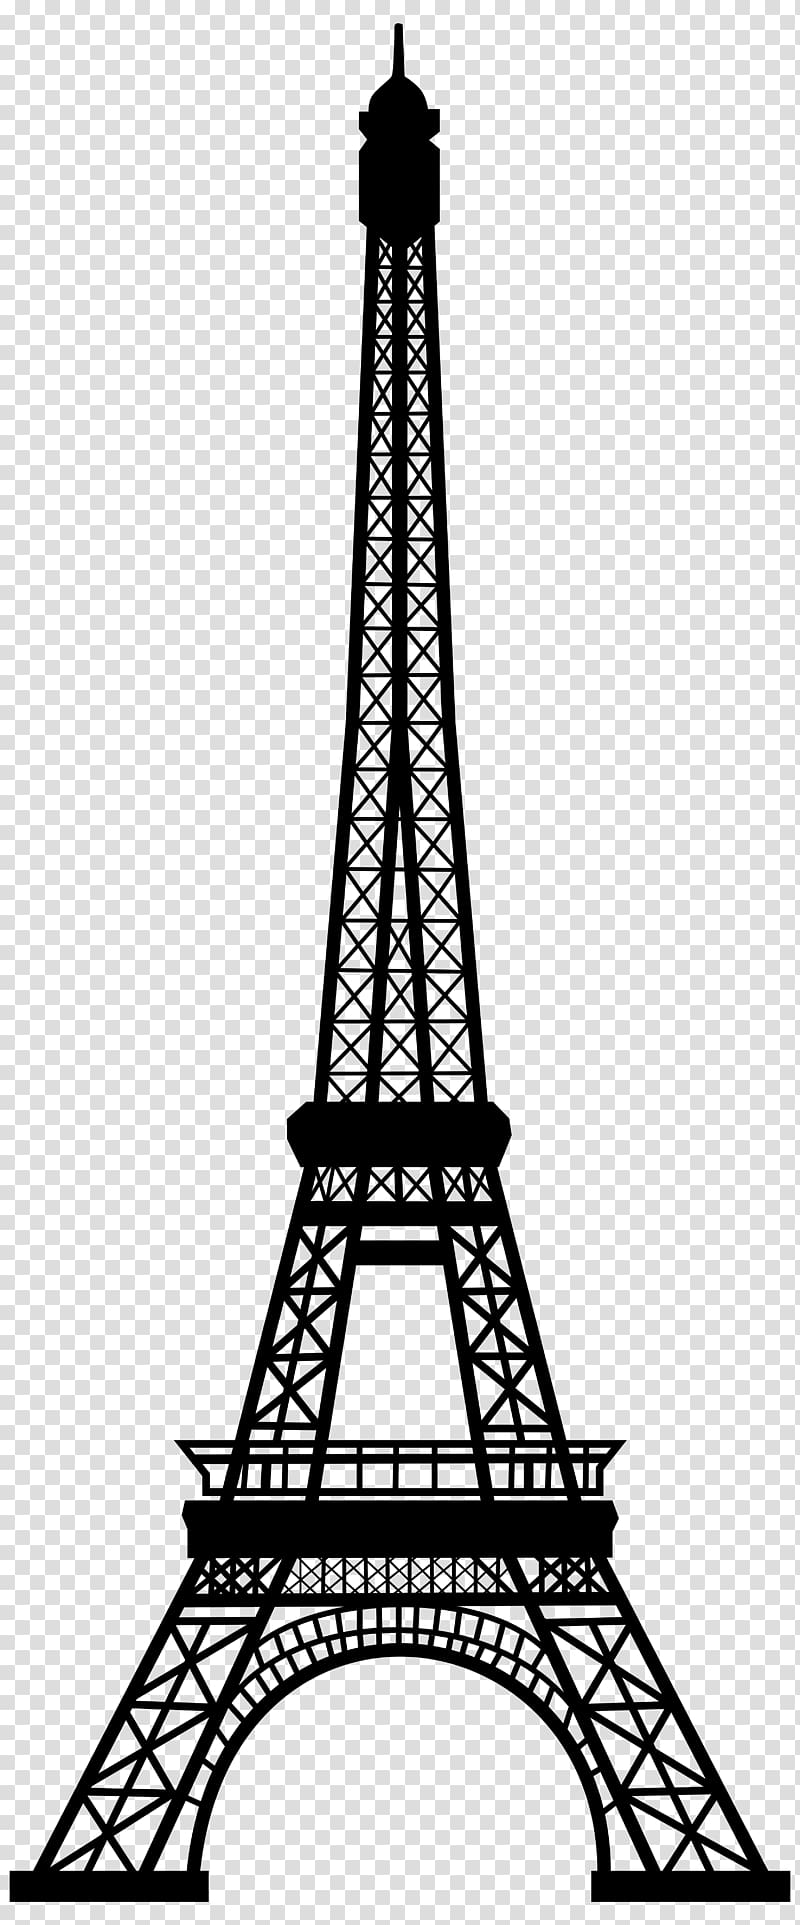 Eiffel Tower Silhouette , Paris transparent background PNG clipart